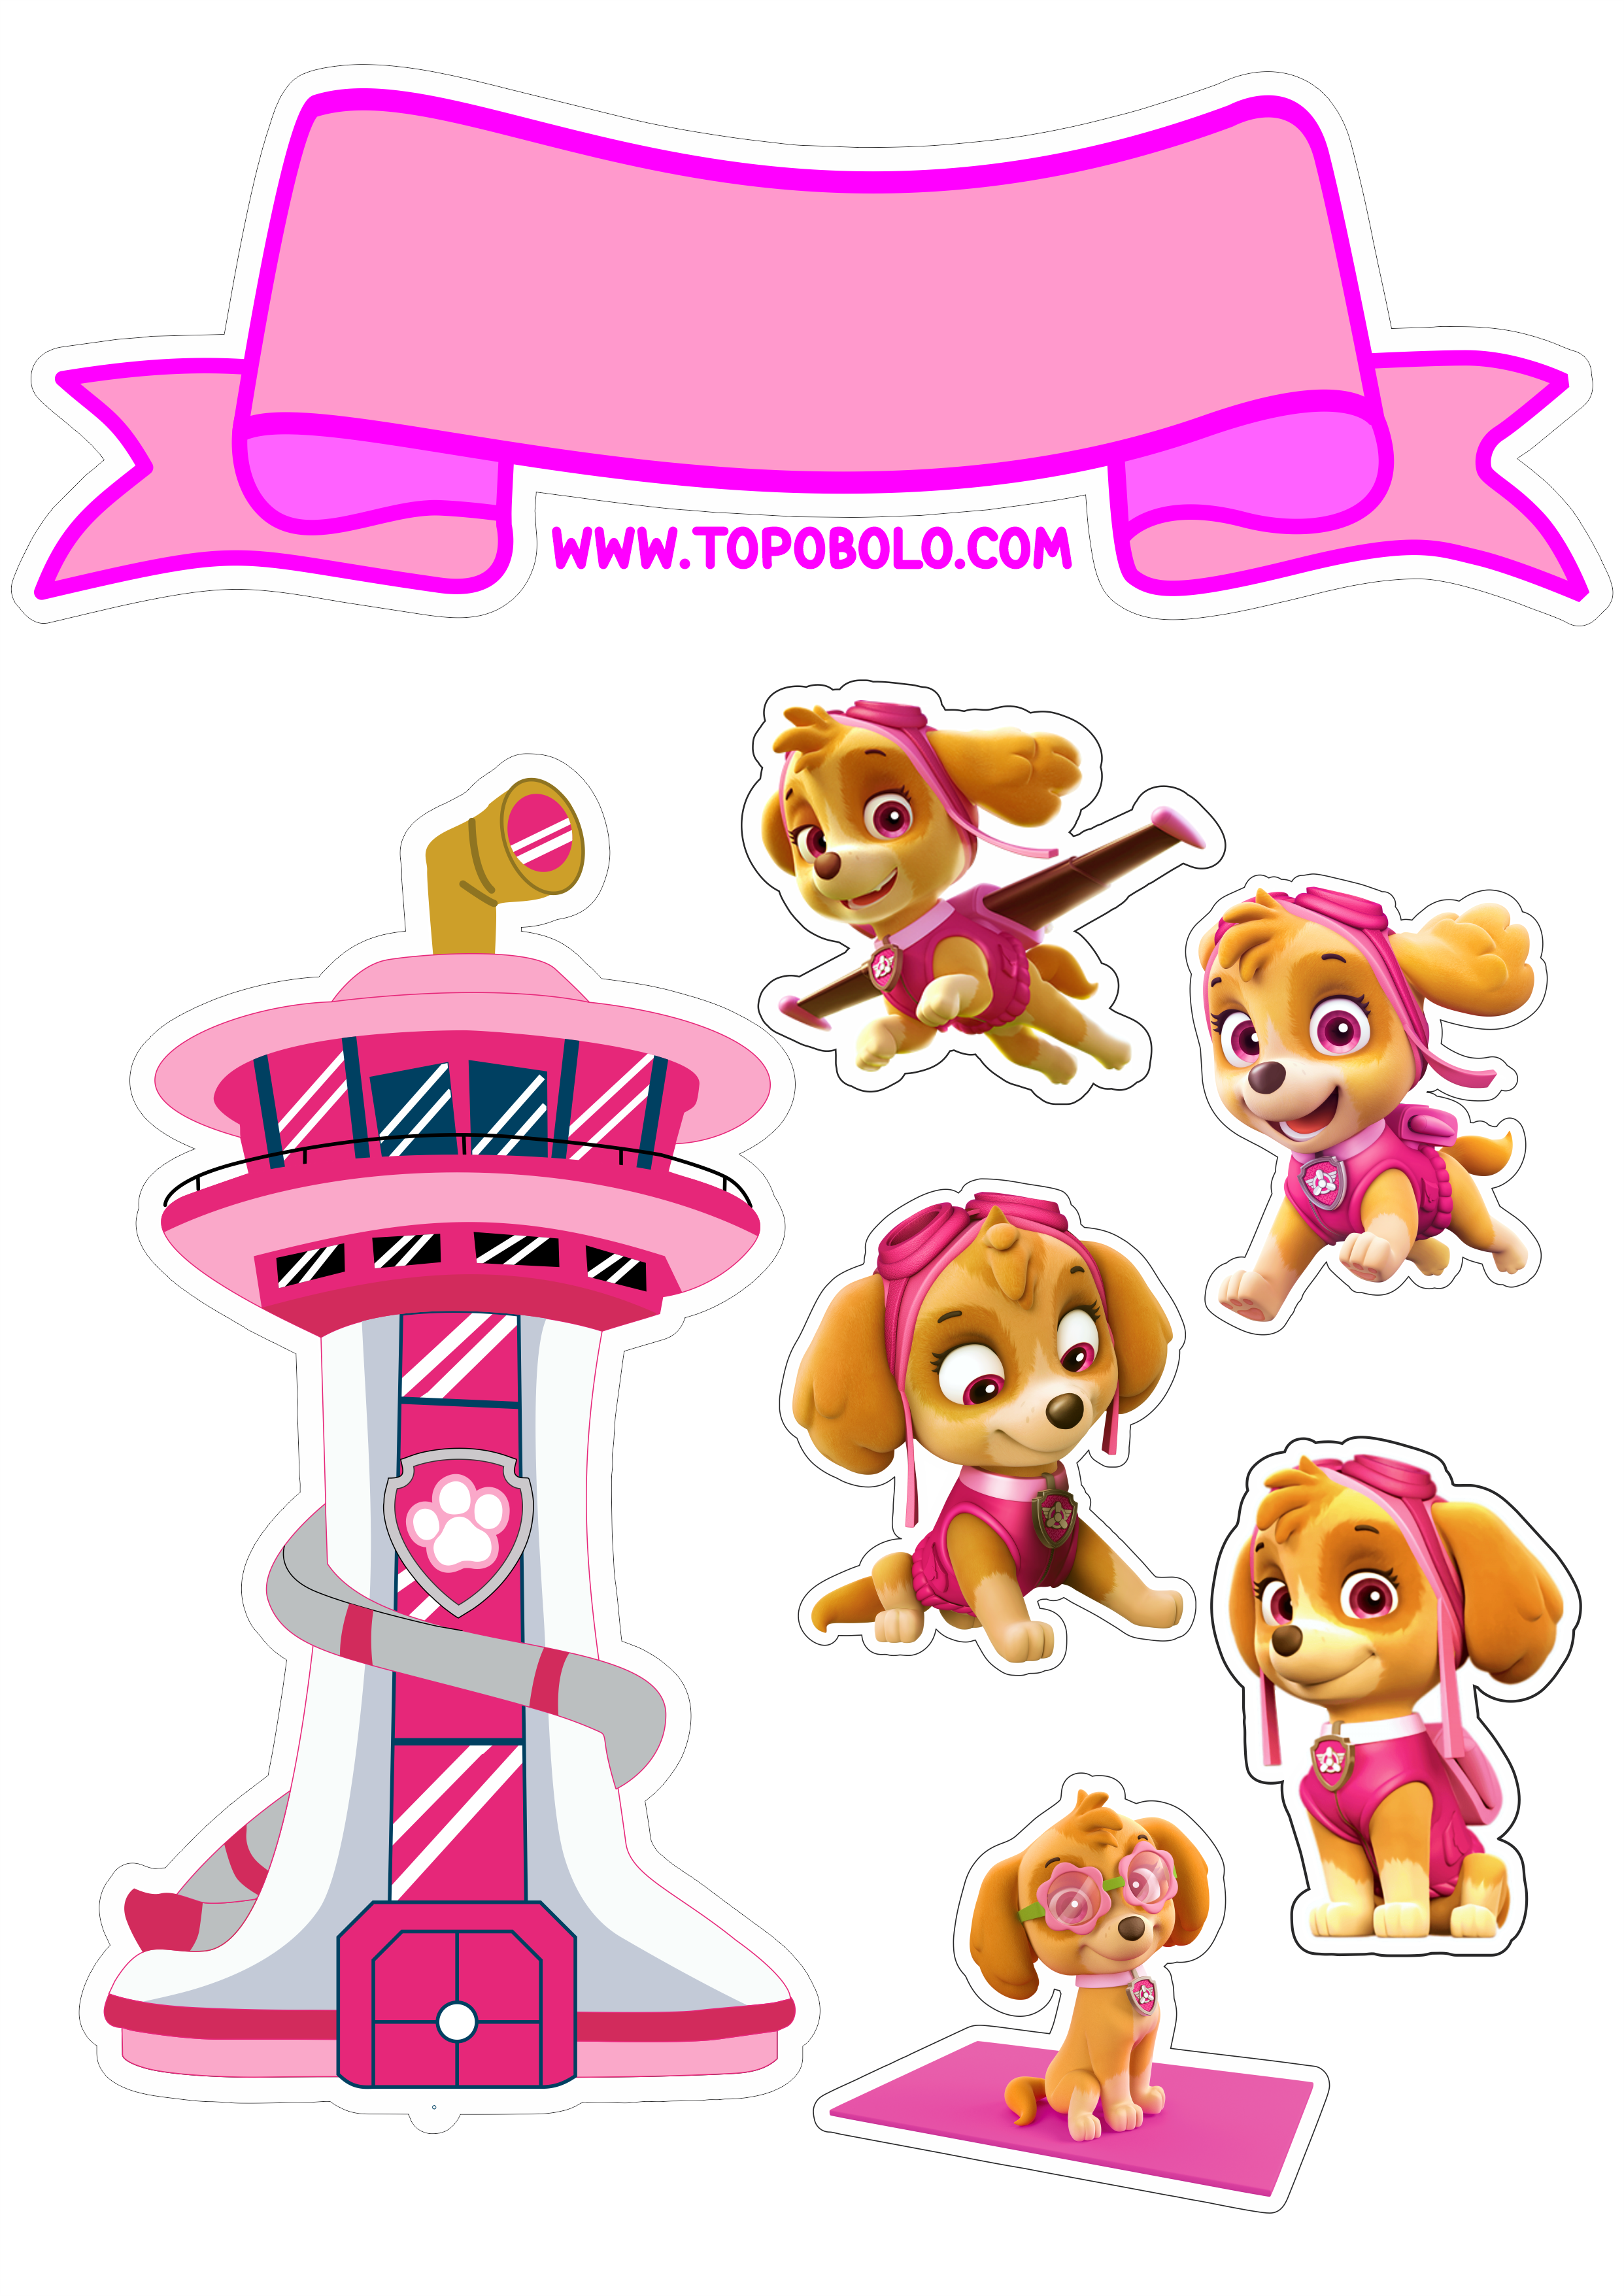 Topo de bolo para imprimir patrulha canina rosa Skye desenho infantil animação aniversário personalizado torre download png